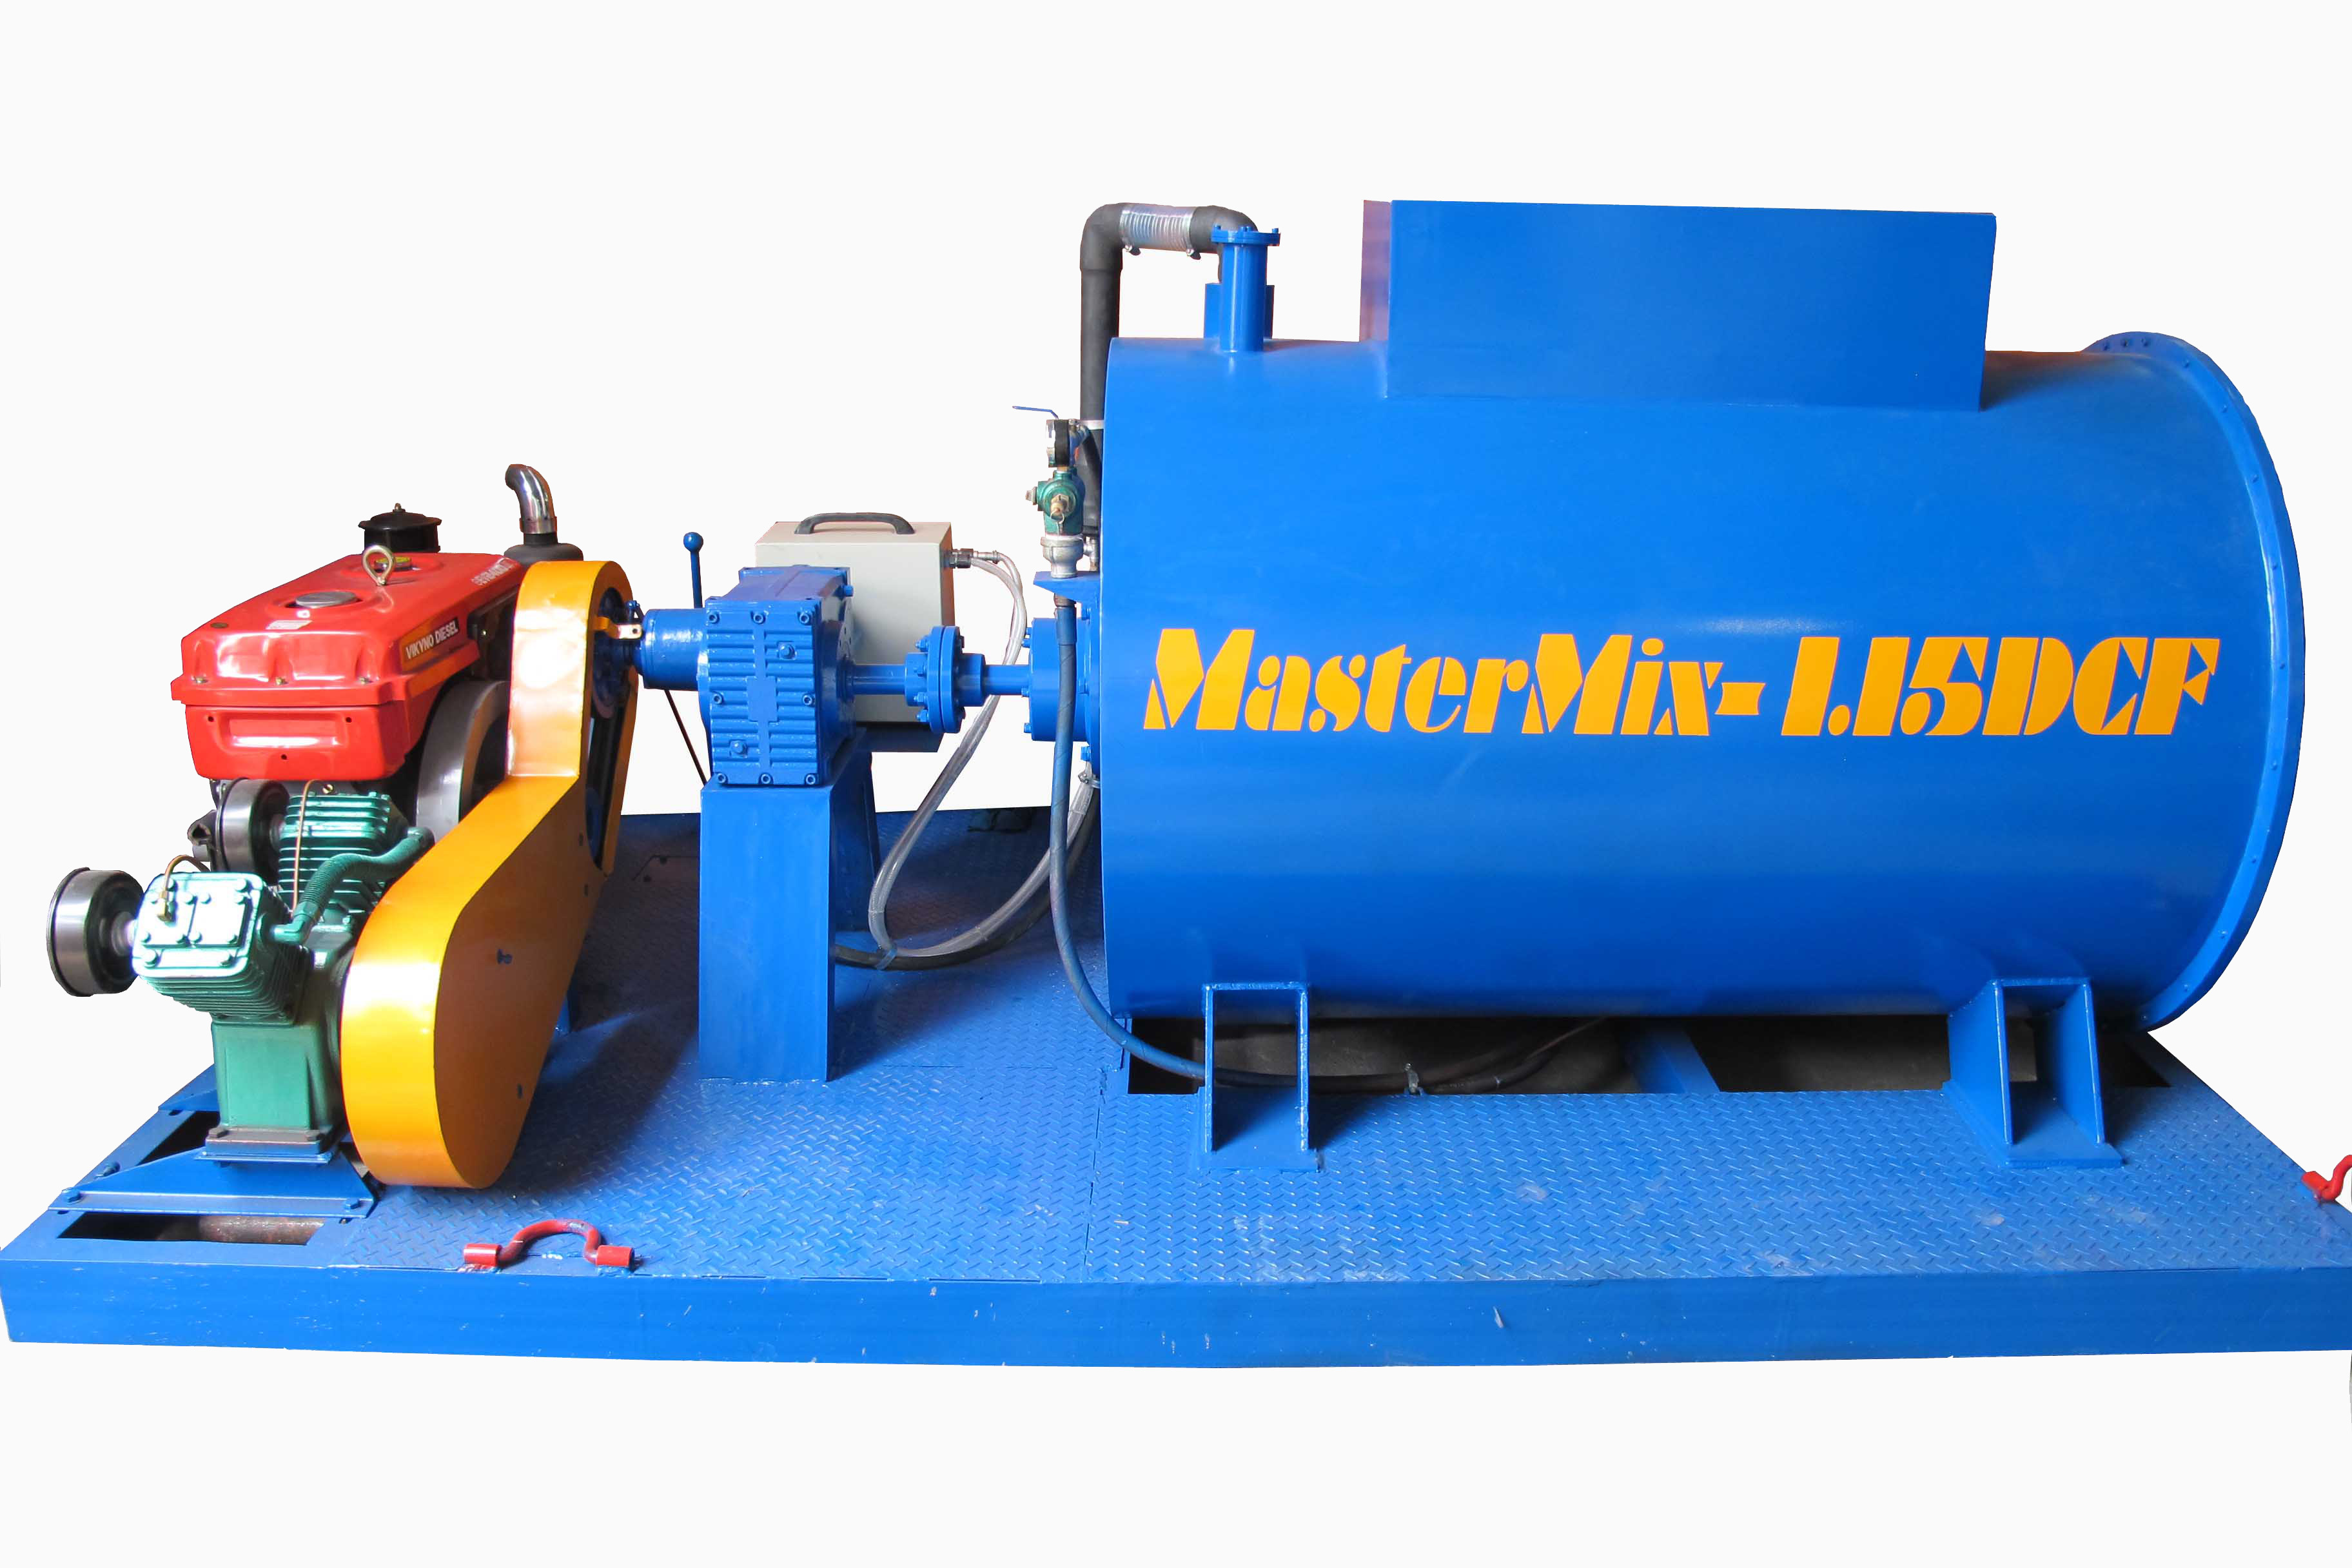 MasterMix - Lightweight concrete mix with diesel engine